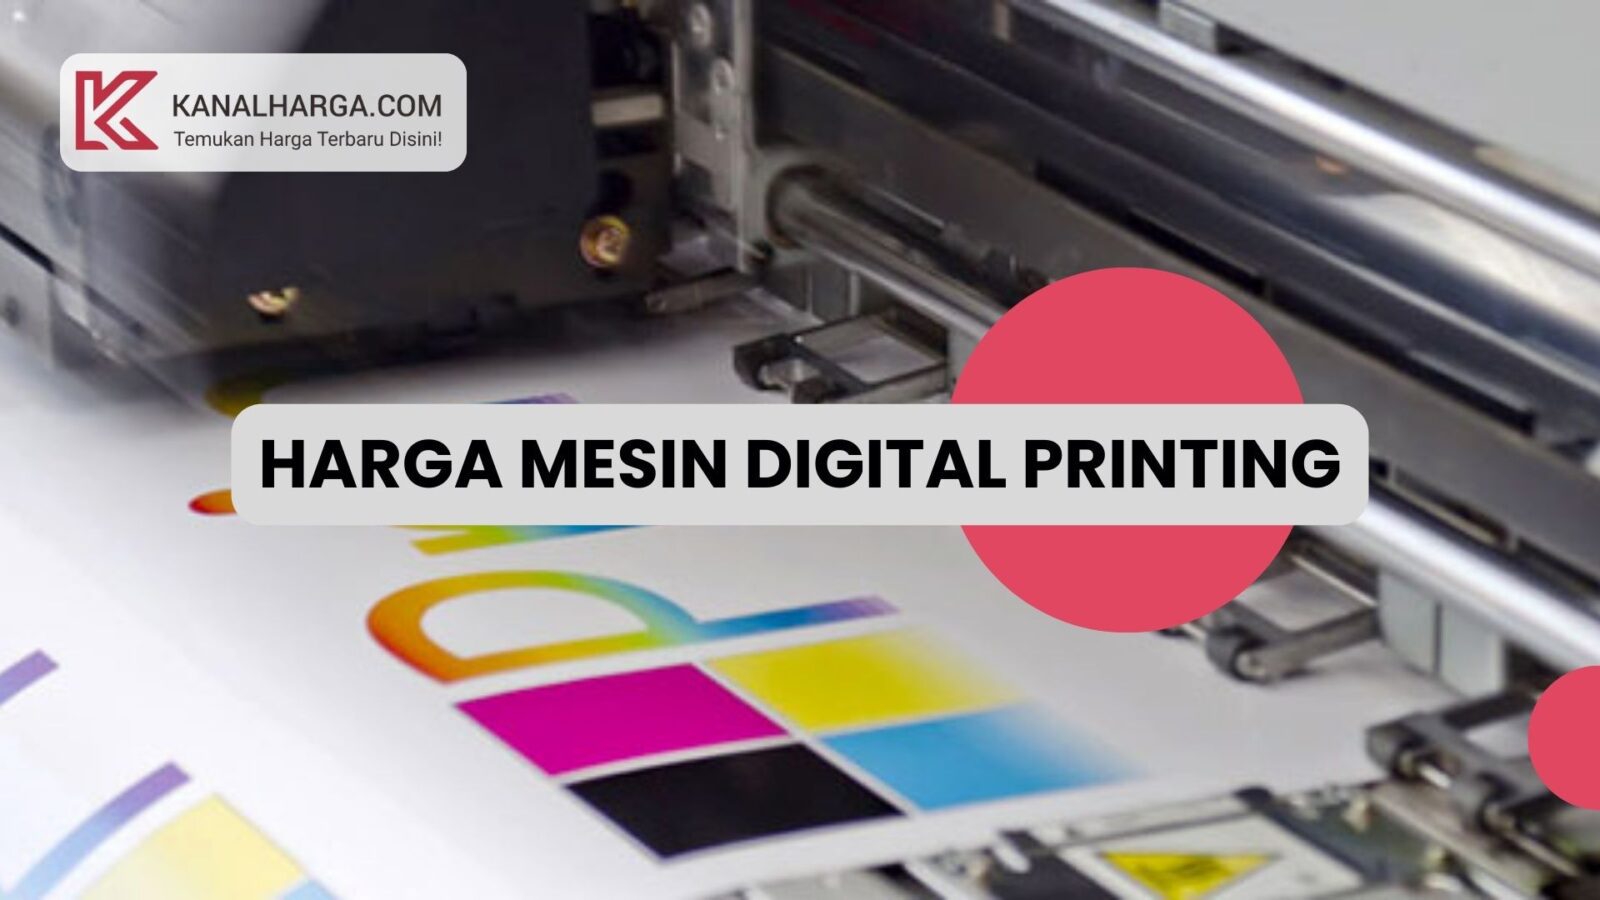 Harga Mesin Digital Printing Harga Mesin Digital Printing A3 Plus